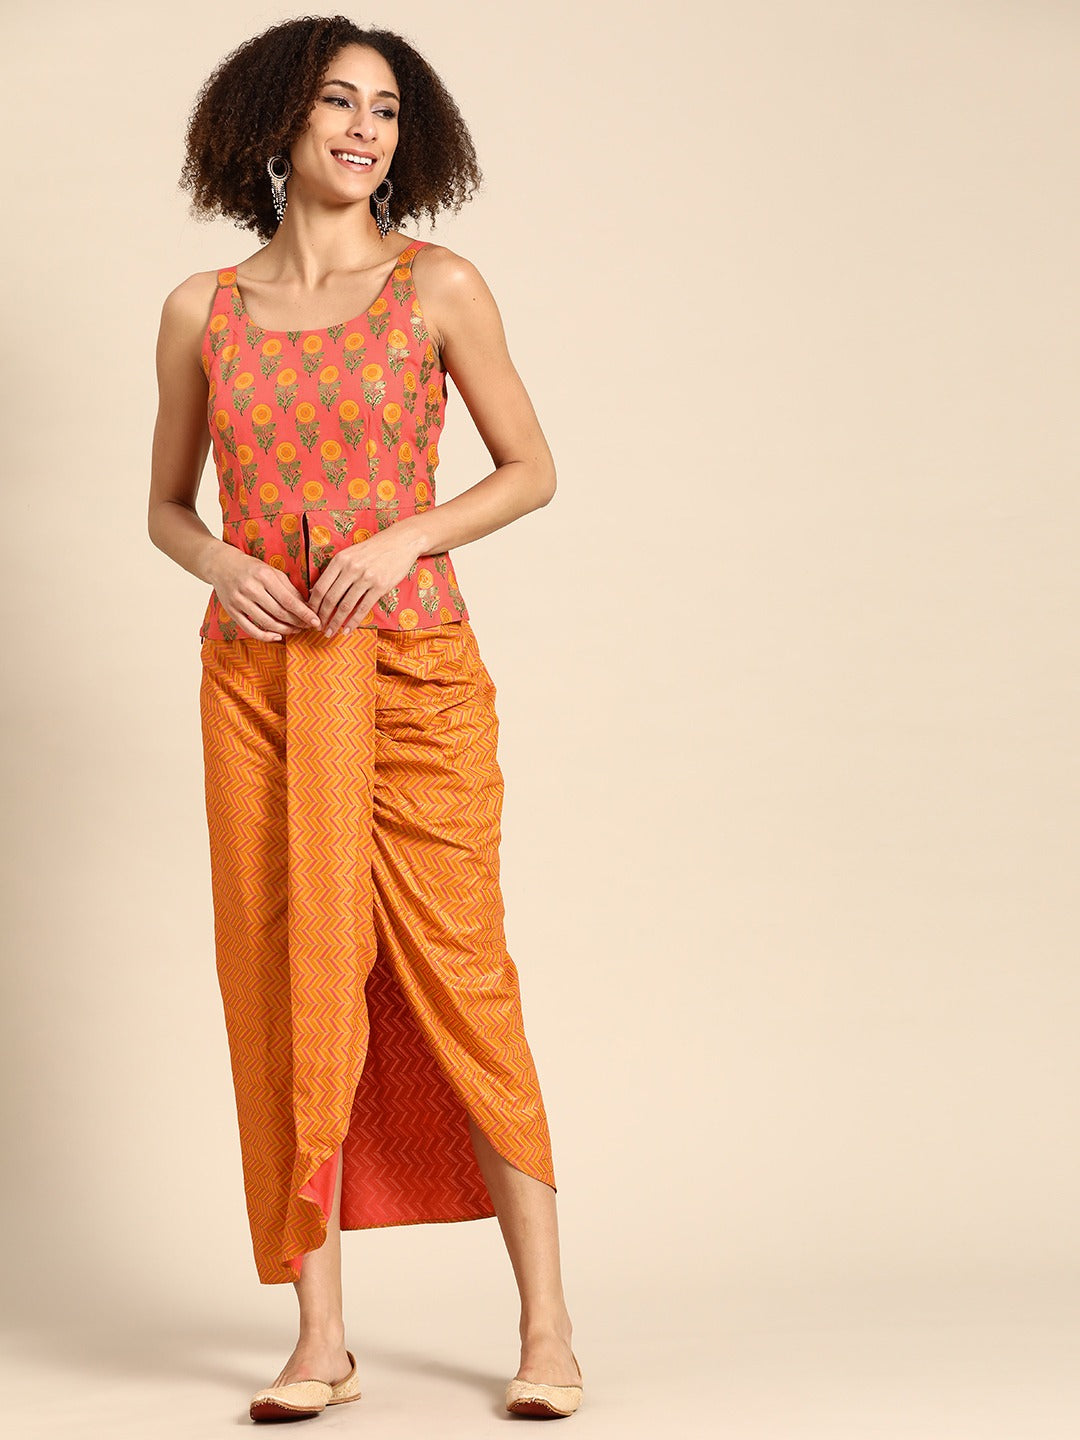 Dhoti Skirt with Long peplum top